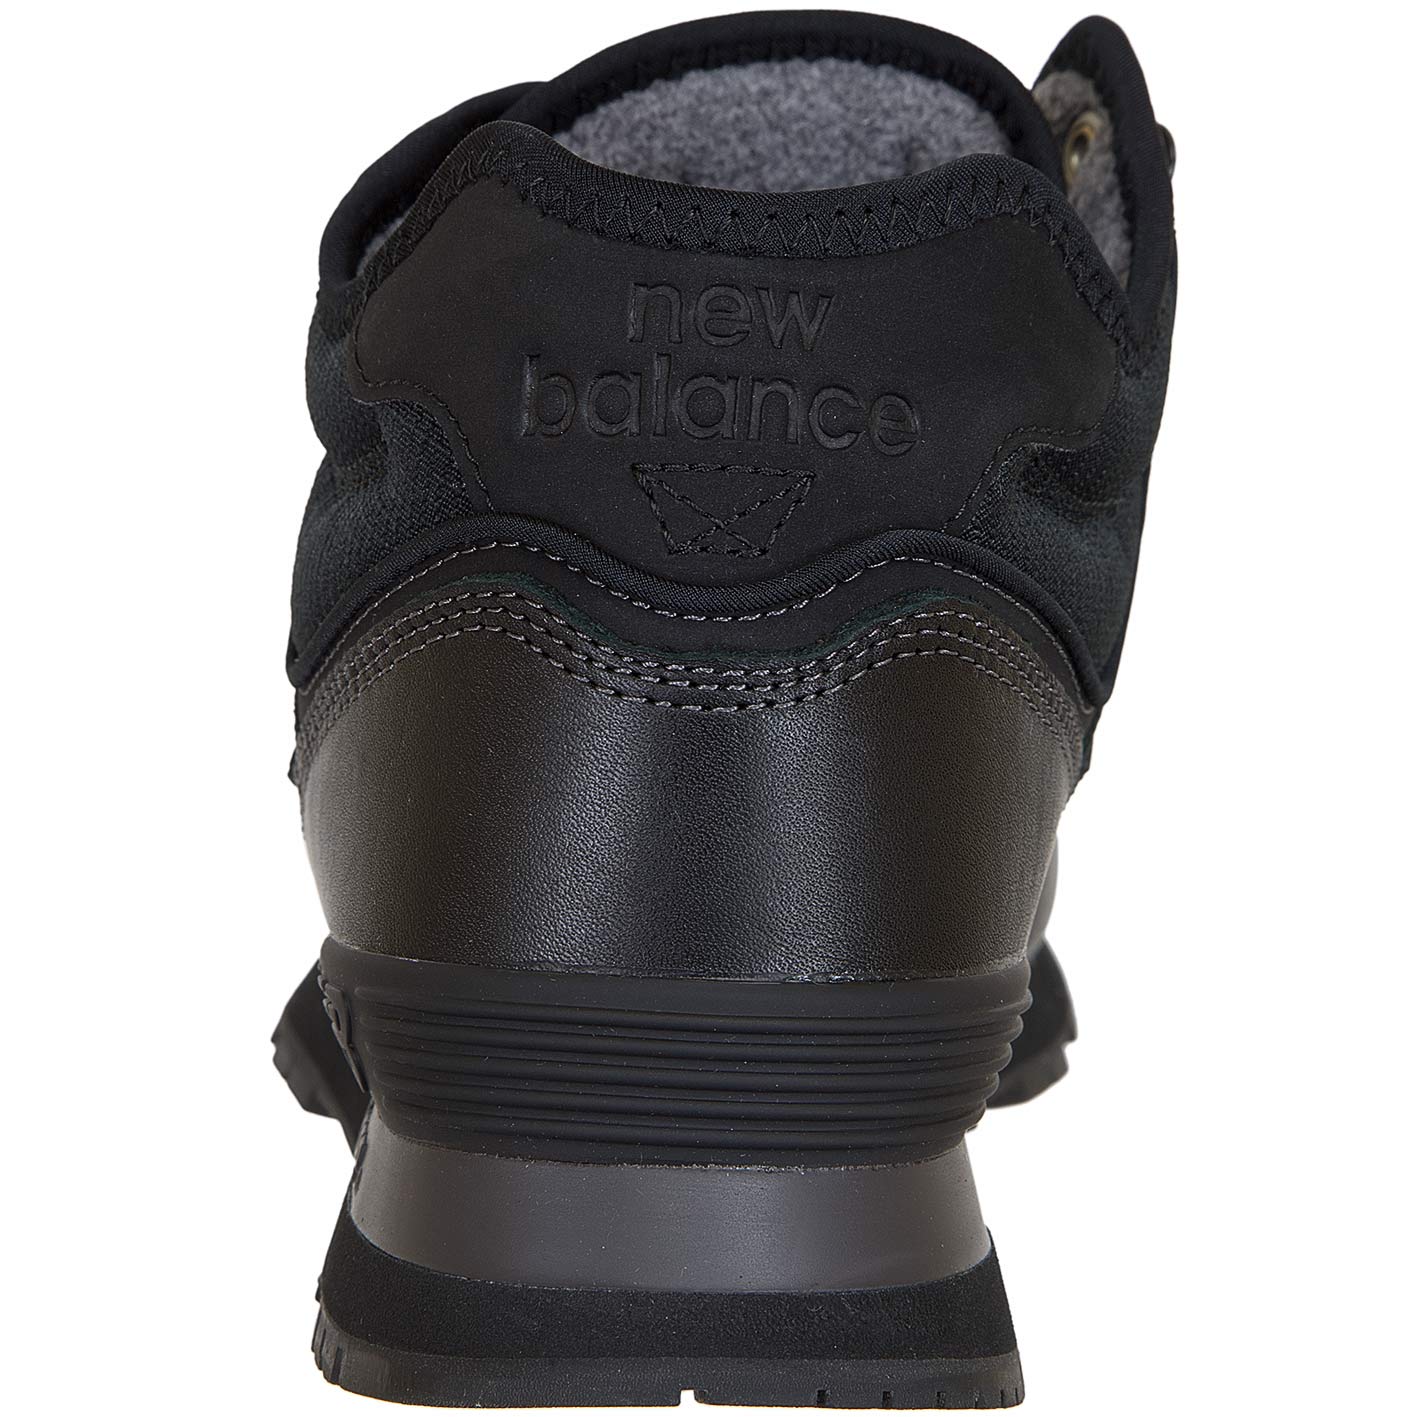 ☆ New Balance Boots 574 Leder/Mesh/PU schwarz - hier bestellen!